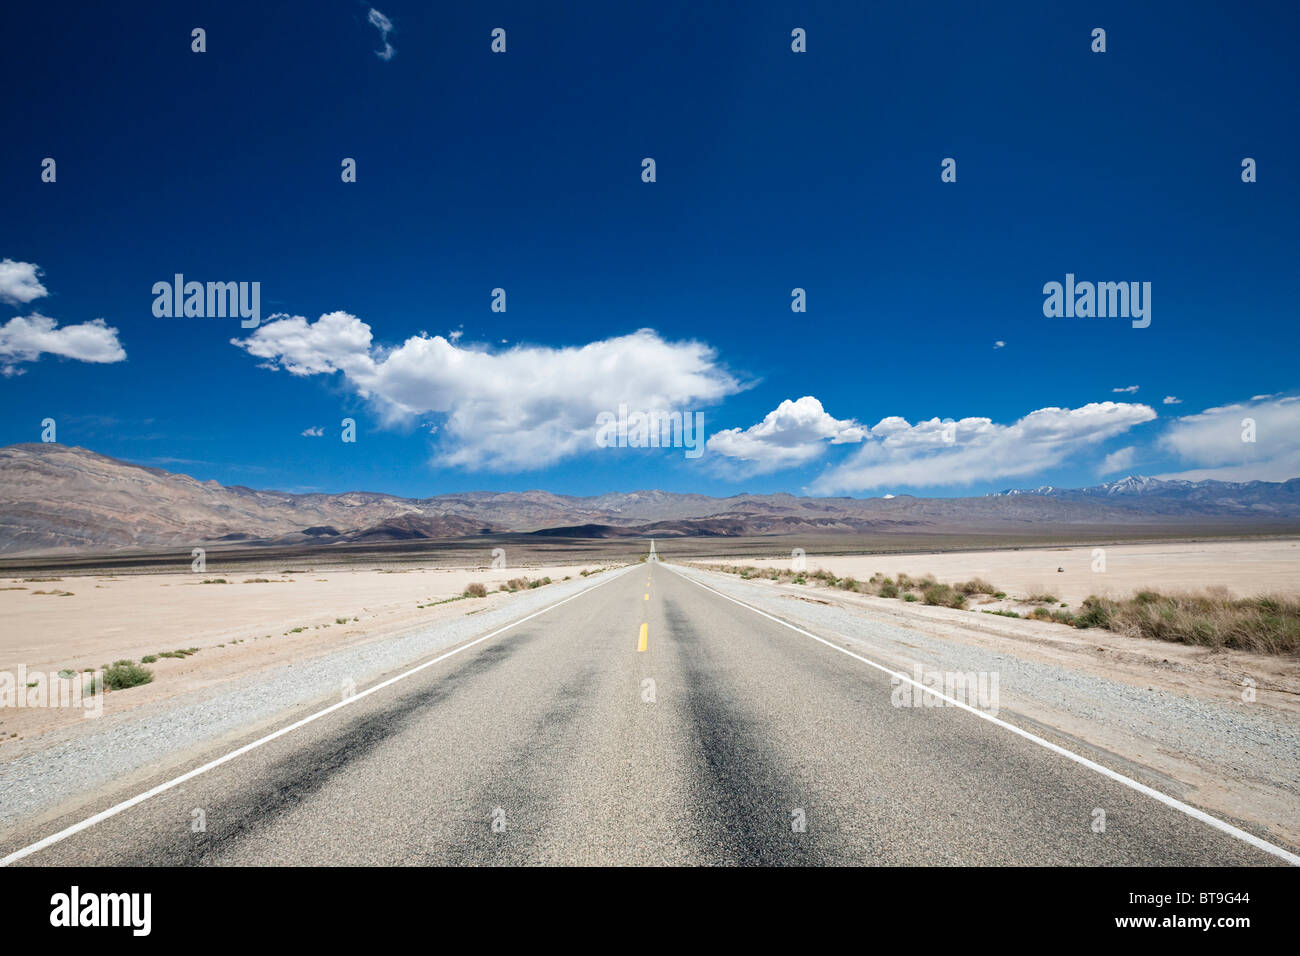 Route de Death Valley National Park, désert de Mojave, Californie, Nevada, USA Banque D'Images